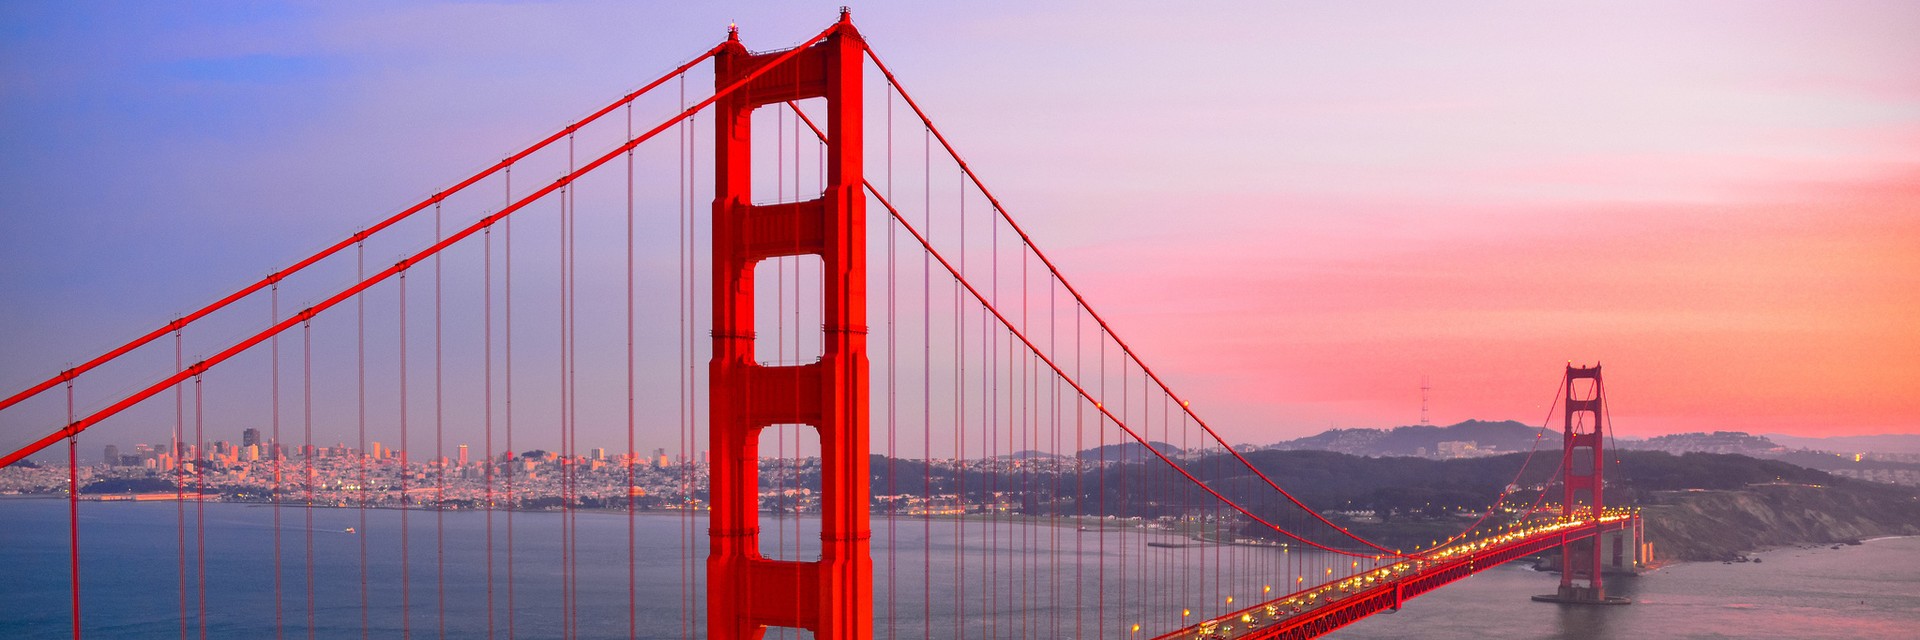  金门大桥 Golden Gate Bridge